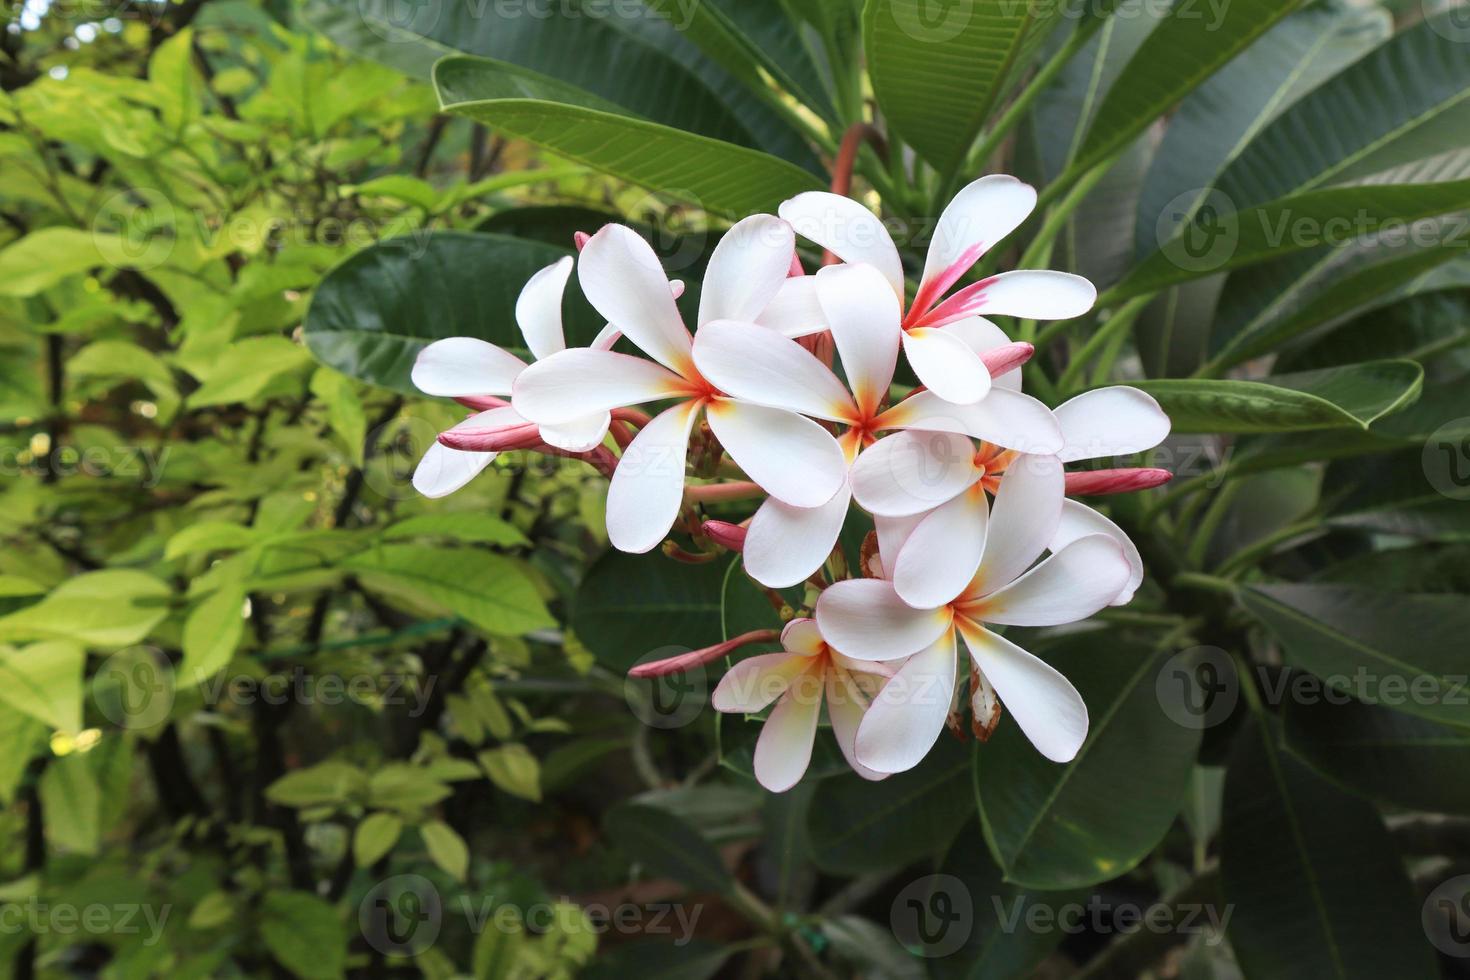 plumeria ou frangipani ou flores da árvore do templo. feche o buquê de flores de plumeria branco-rosa na folha verde no jardim com a luz da manhã. foto